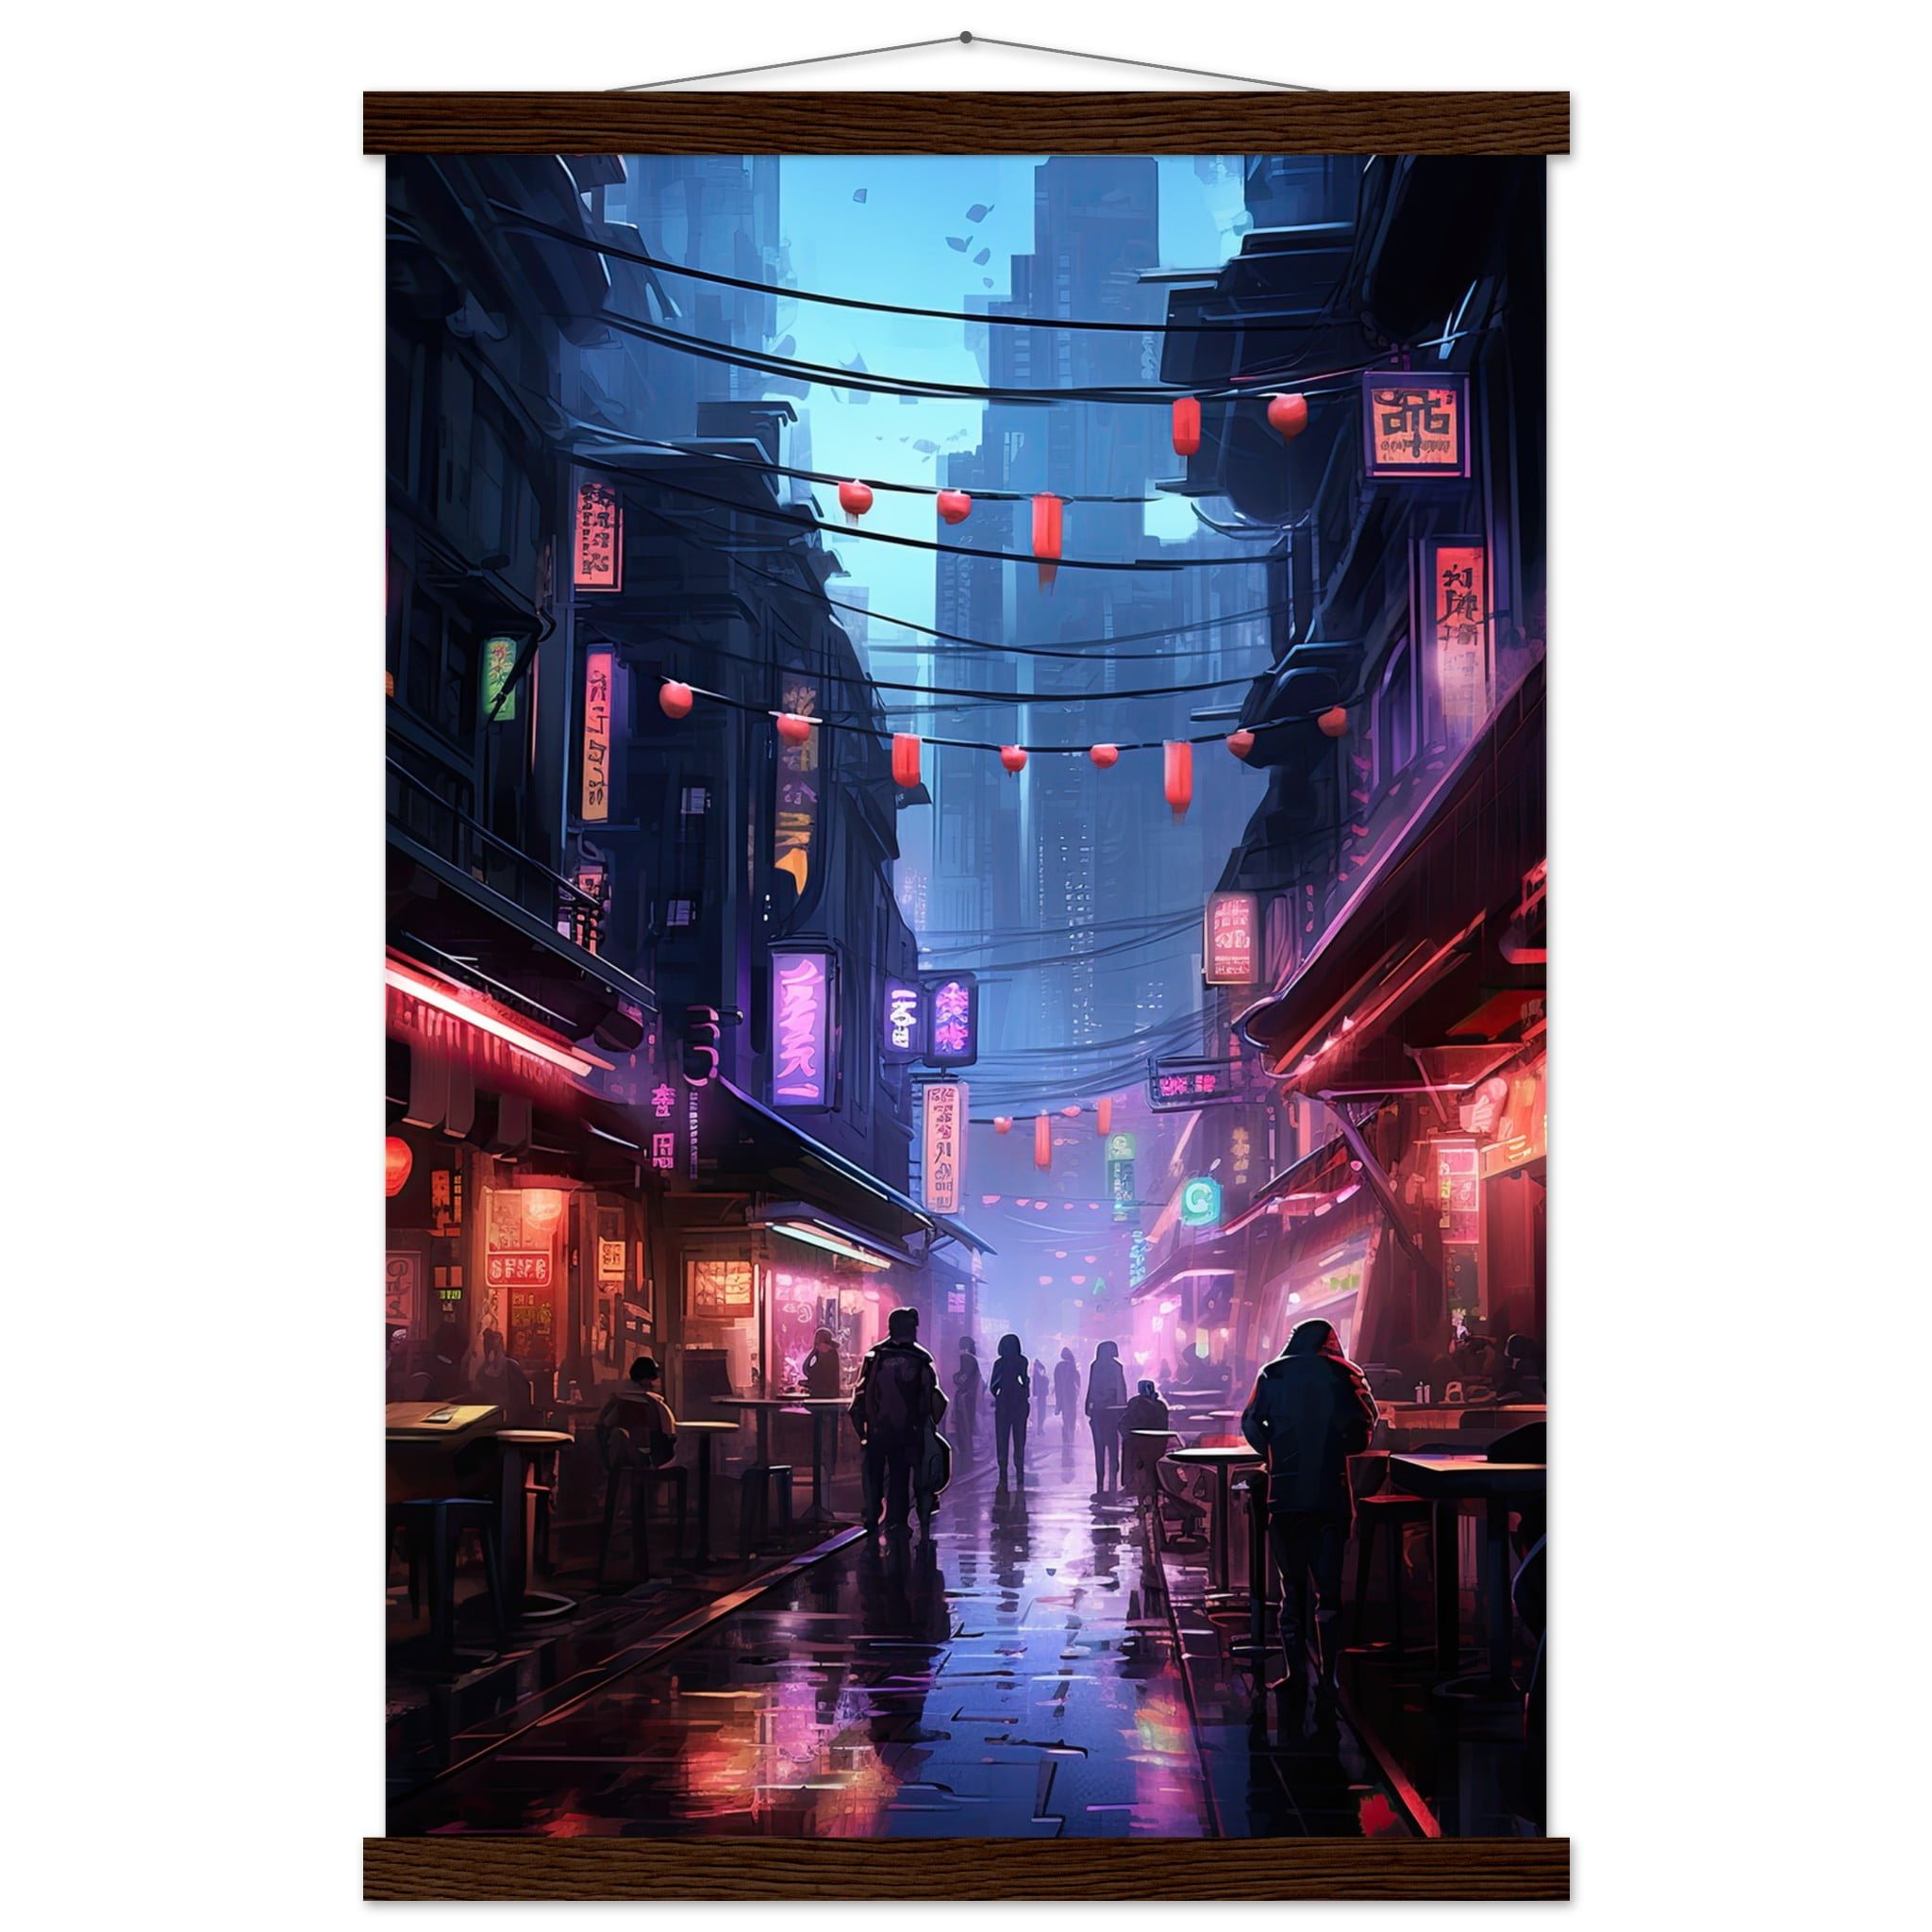 Cyberpunk Market Sci-Fi Art Print with Hanger – 40×60 cm / 16×24″, Dark wood wall hanger